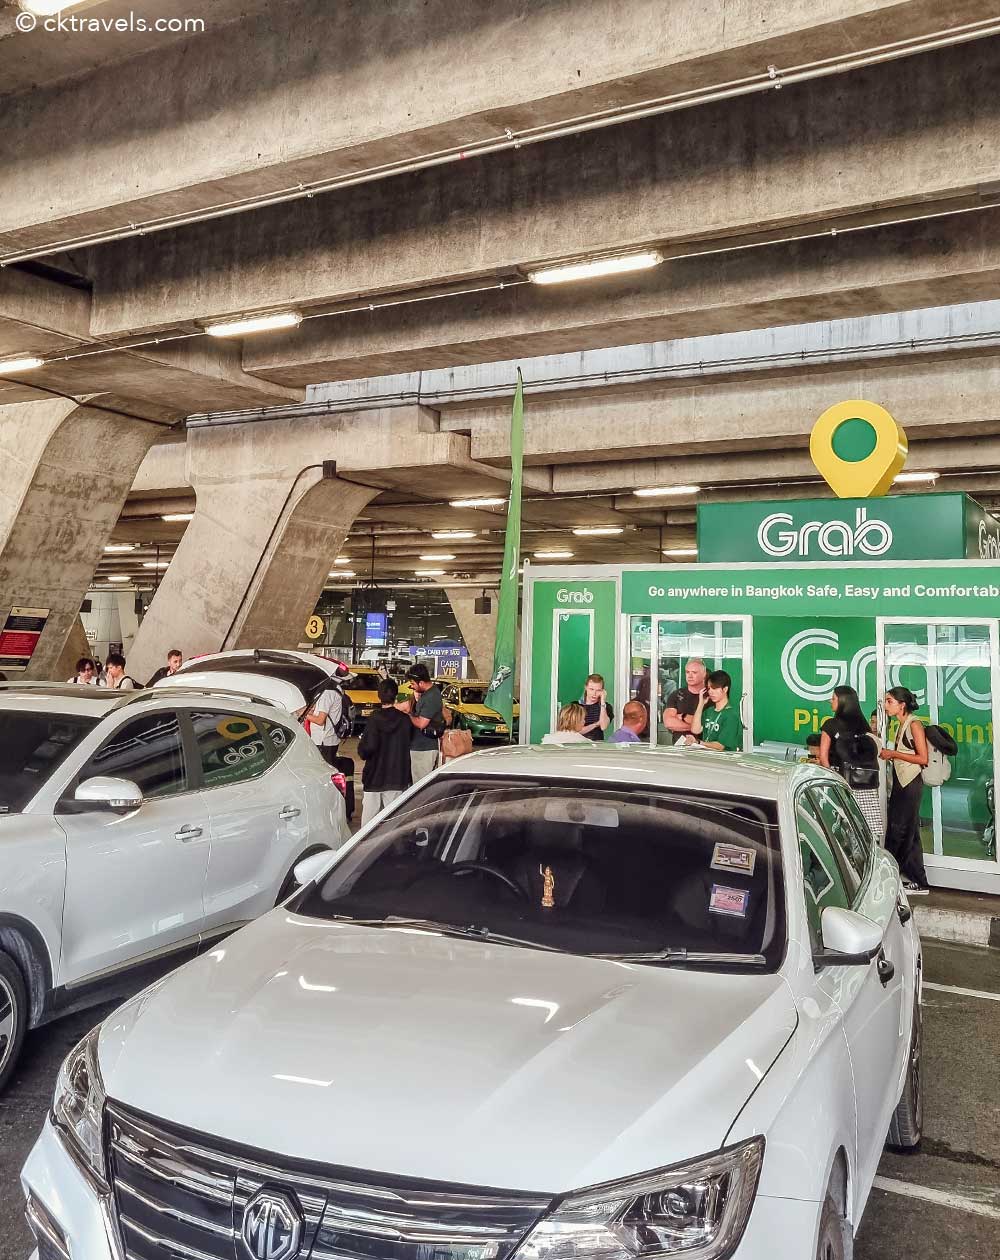 Grab Taxi pick up point gate 4 at Suvarnabhumi Bangkok Airport